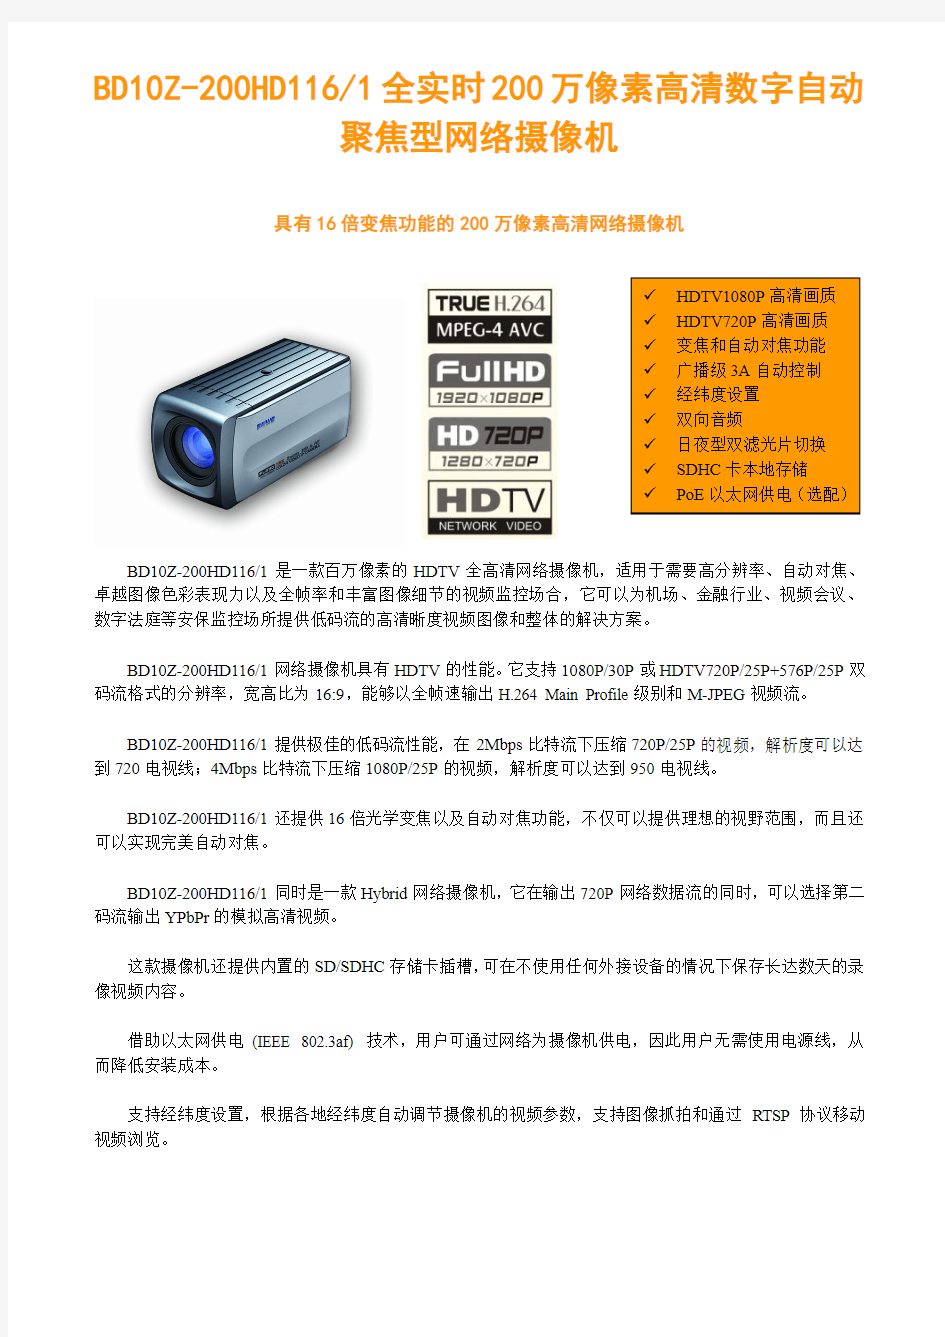 佰沃 BD10Z-200HD1161全实时200万像素高清数字自动聚焦型网络摄像机介绍